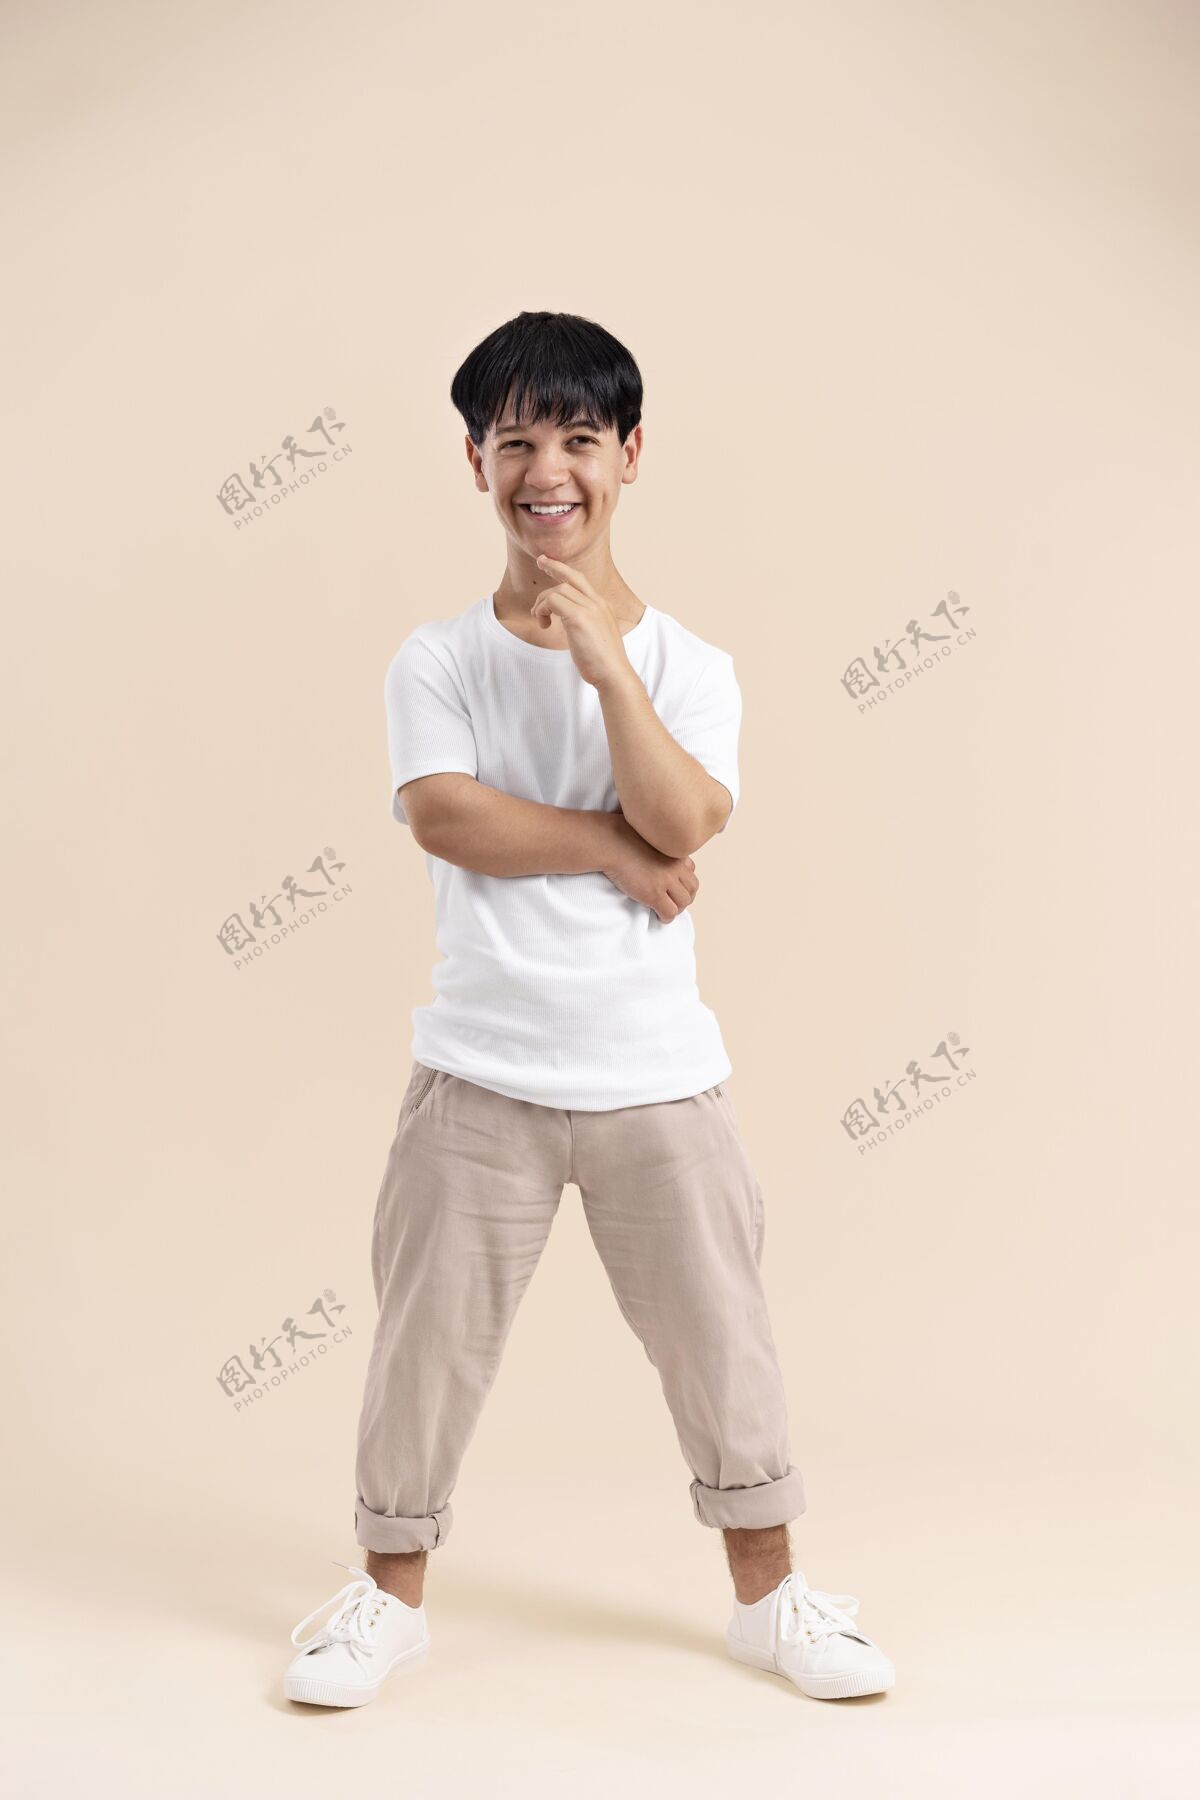 特别一个穿着白衬衫的亚洲人摆着侏儒的姿势人类身体积极积极